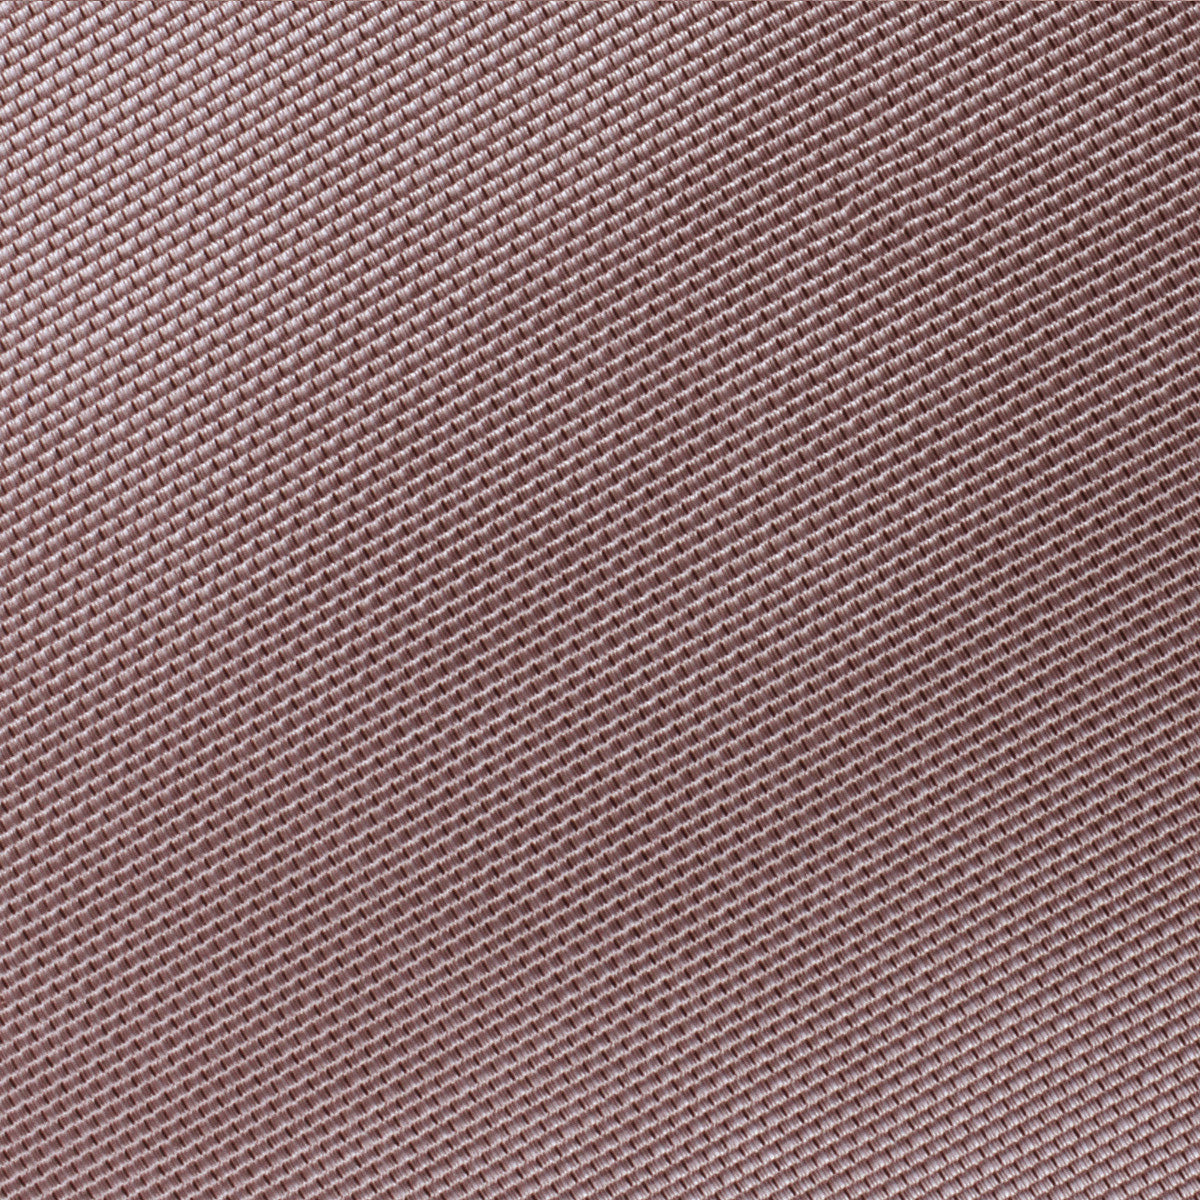 Dusty Mauve Quartz Weave Necktie Fabric